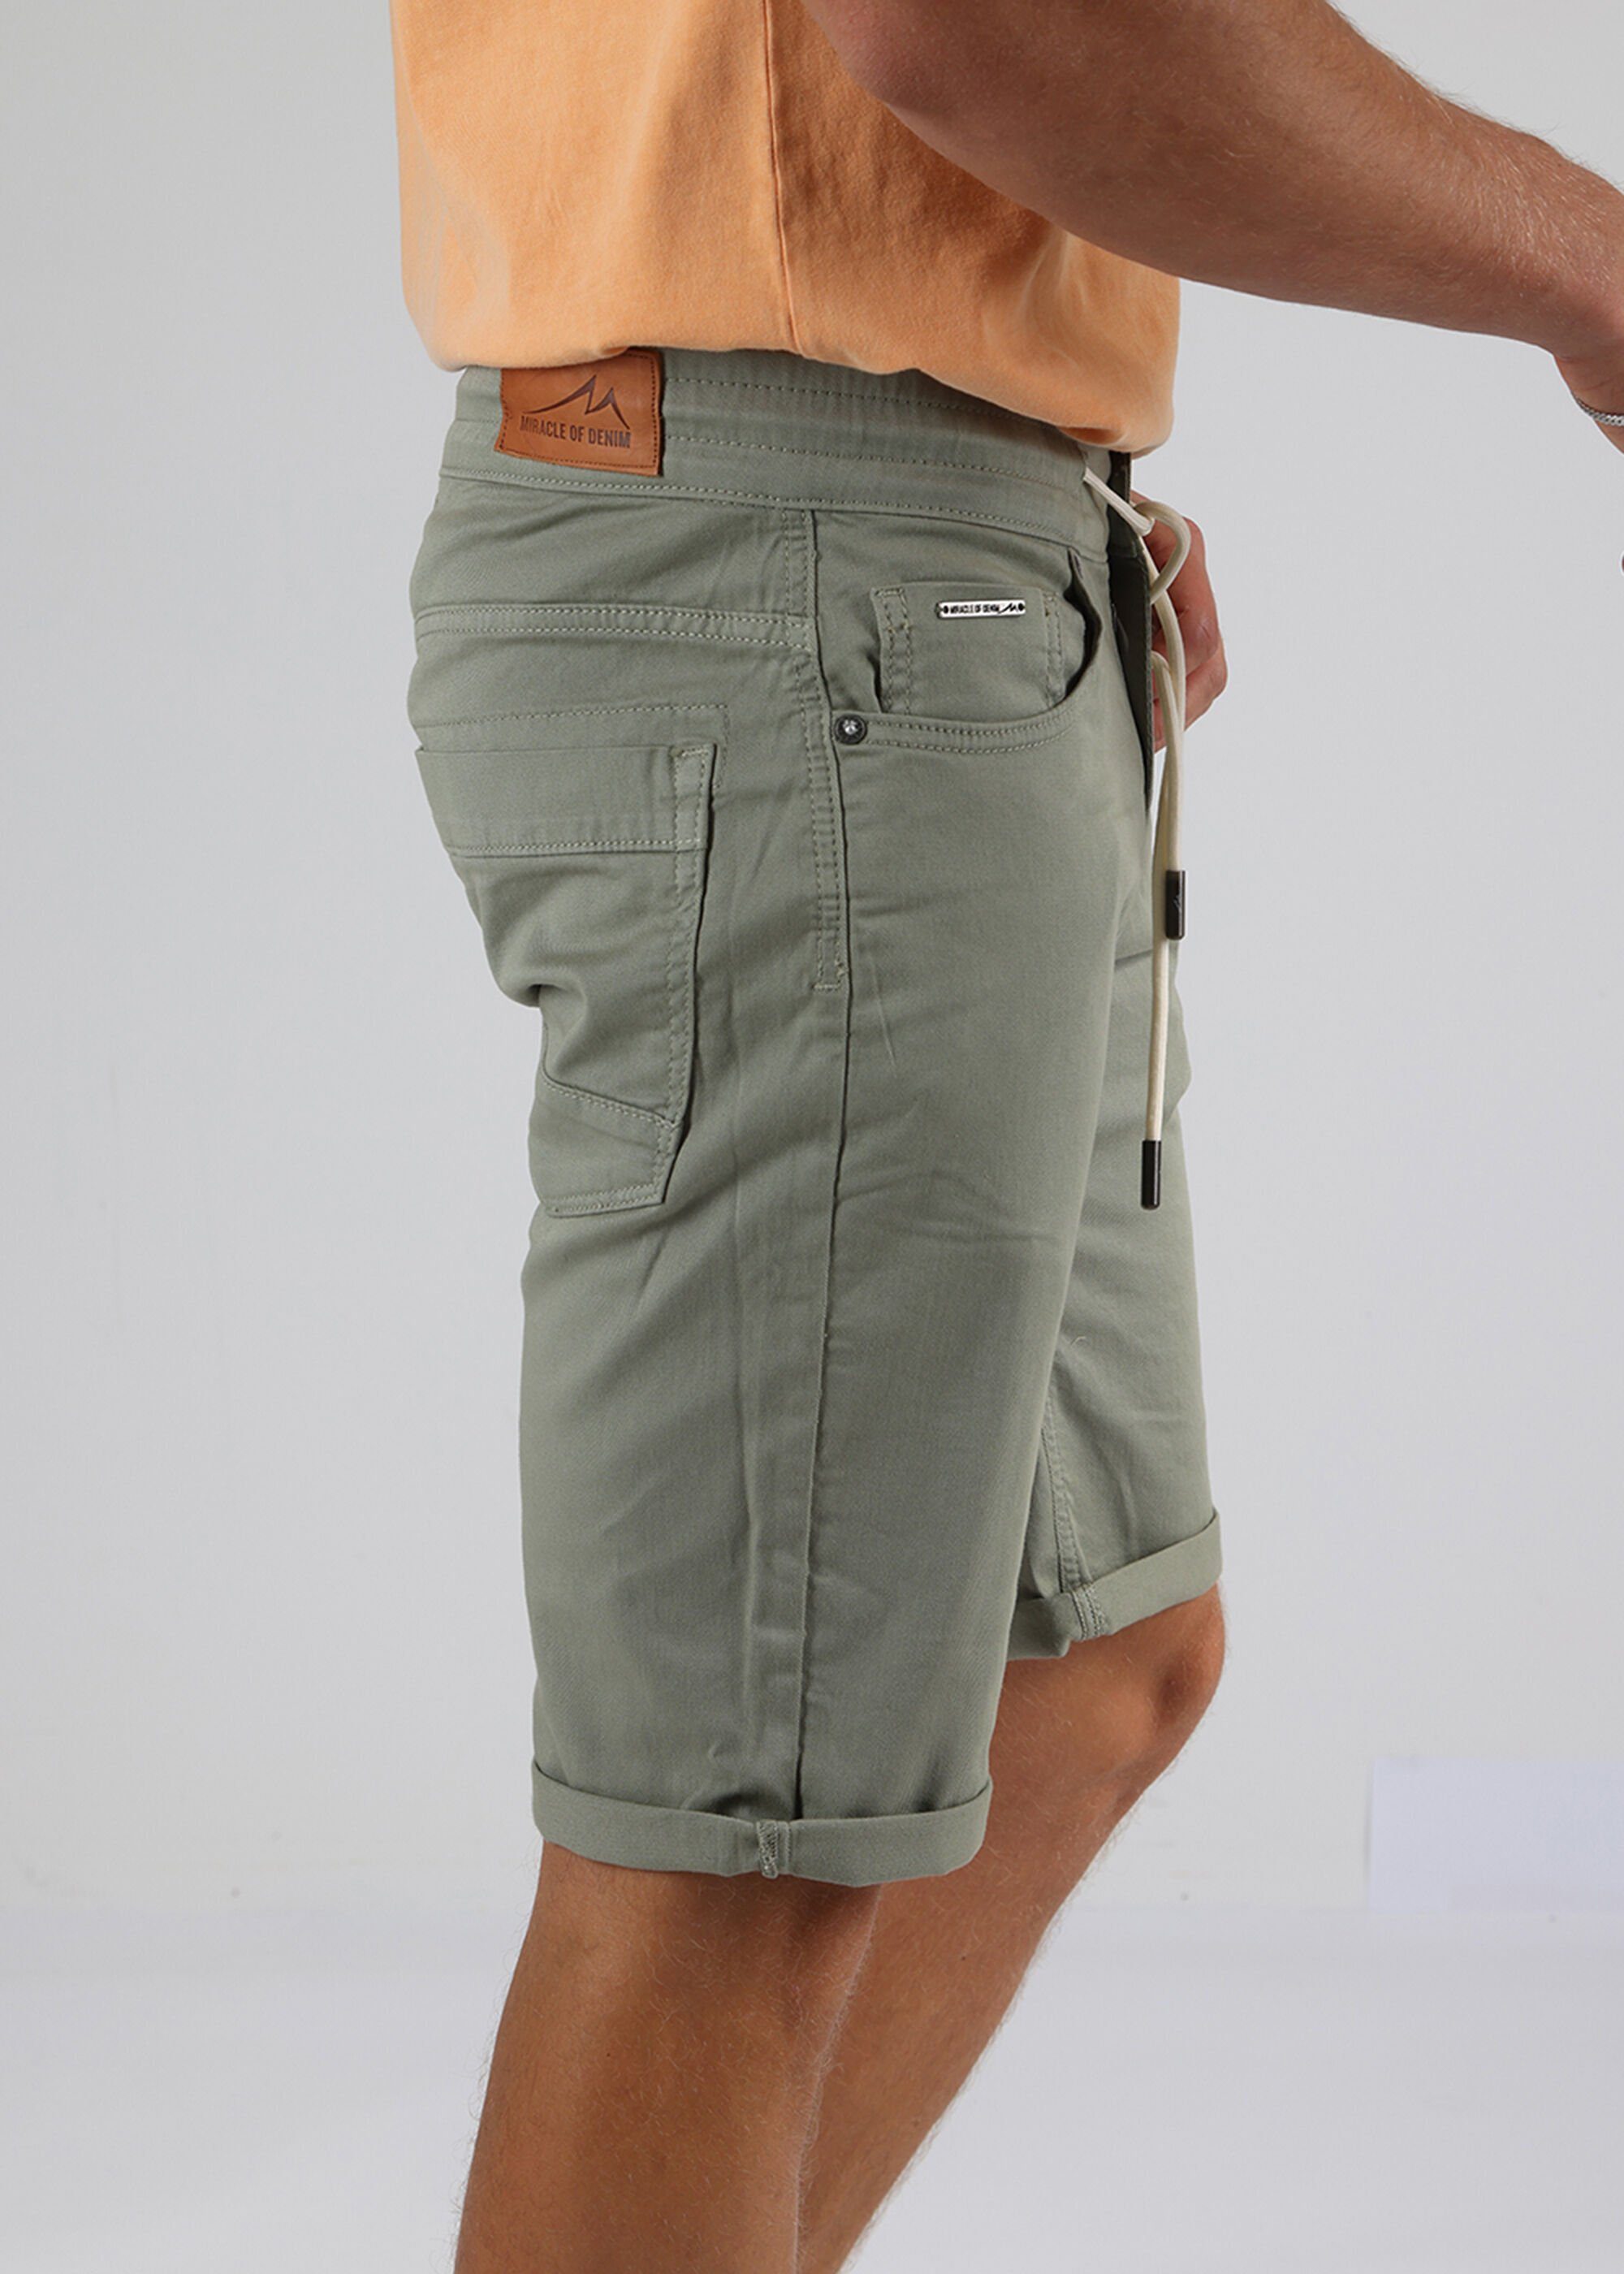 5 Pocket im of Denim Olive Shorts Style Miracle Thomas Shorts